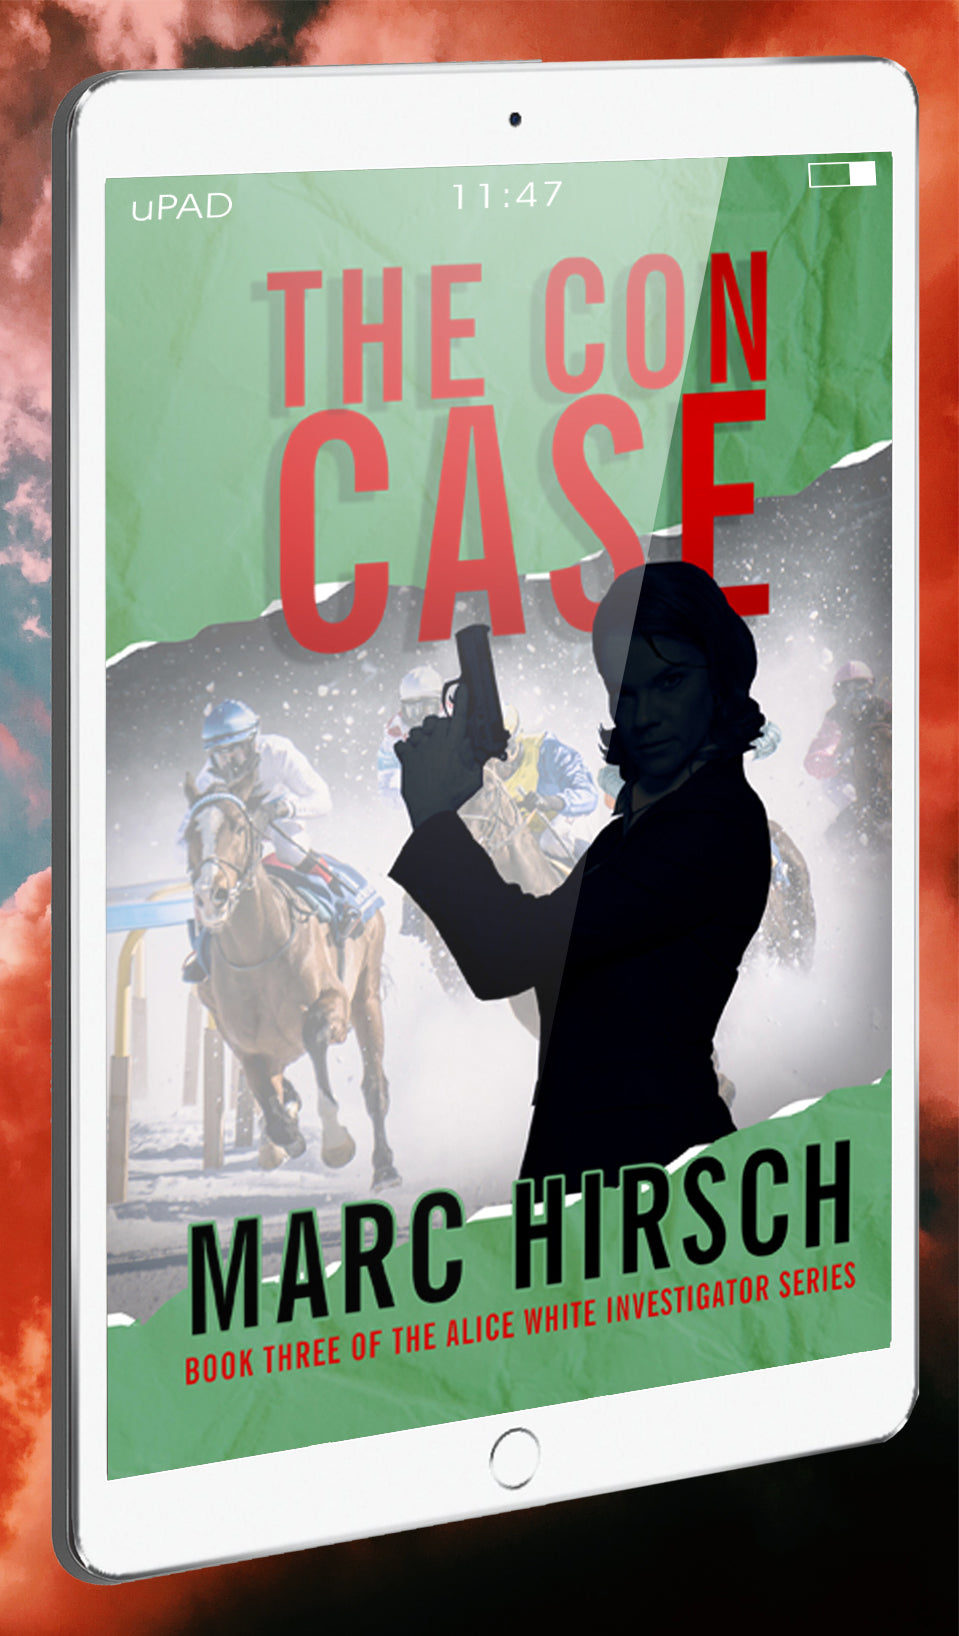 The Con Case eBook: Alice White Investigator Series Book 3